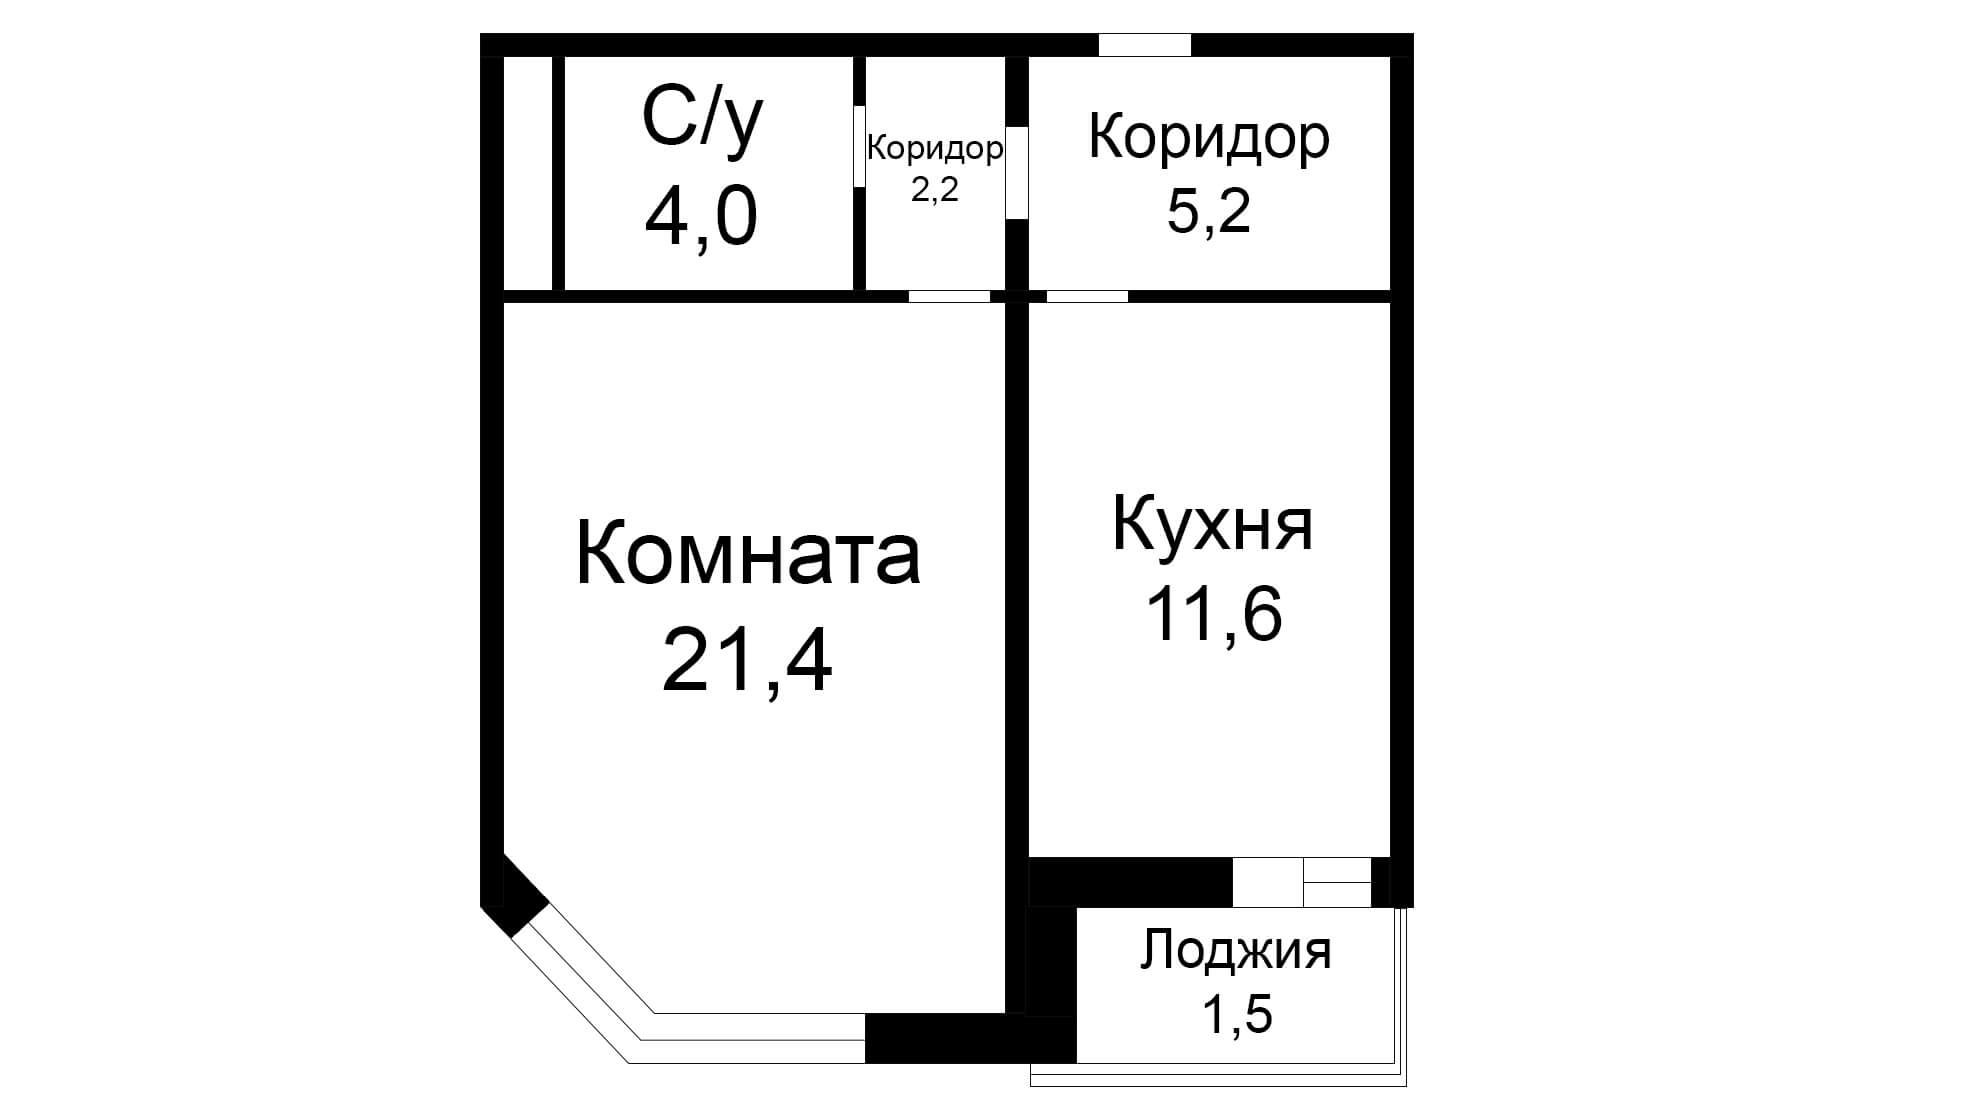 Планировка квартиры пик 2 комнаты